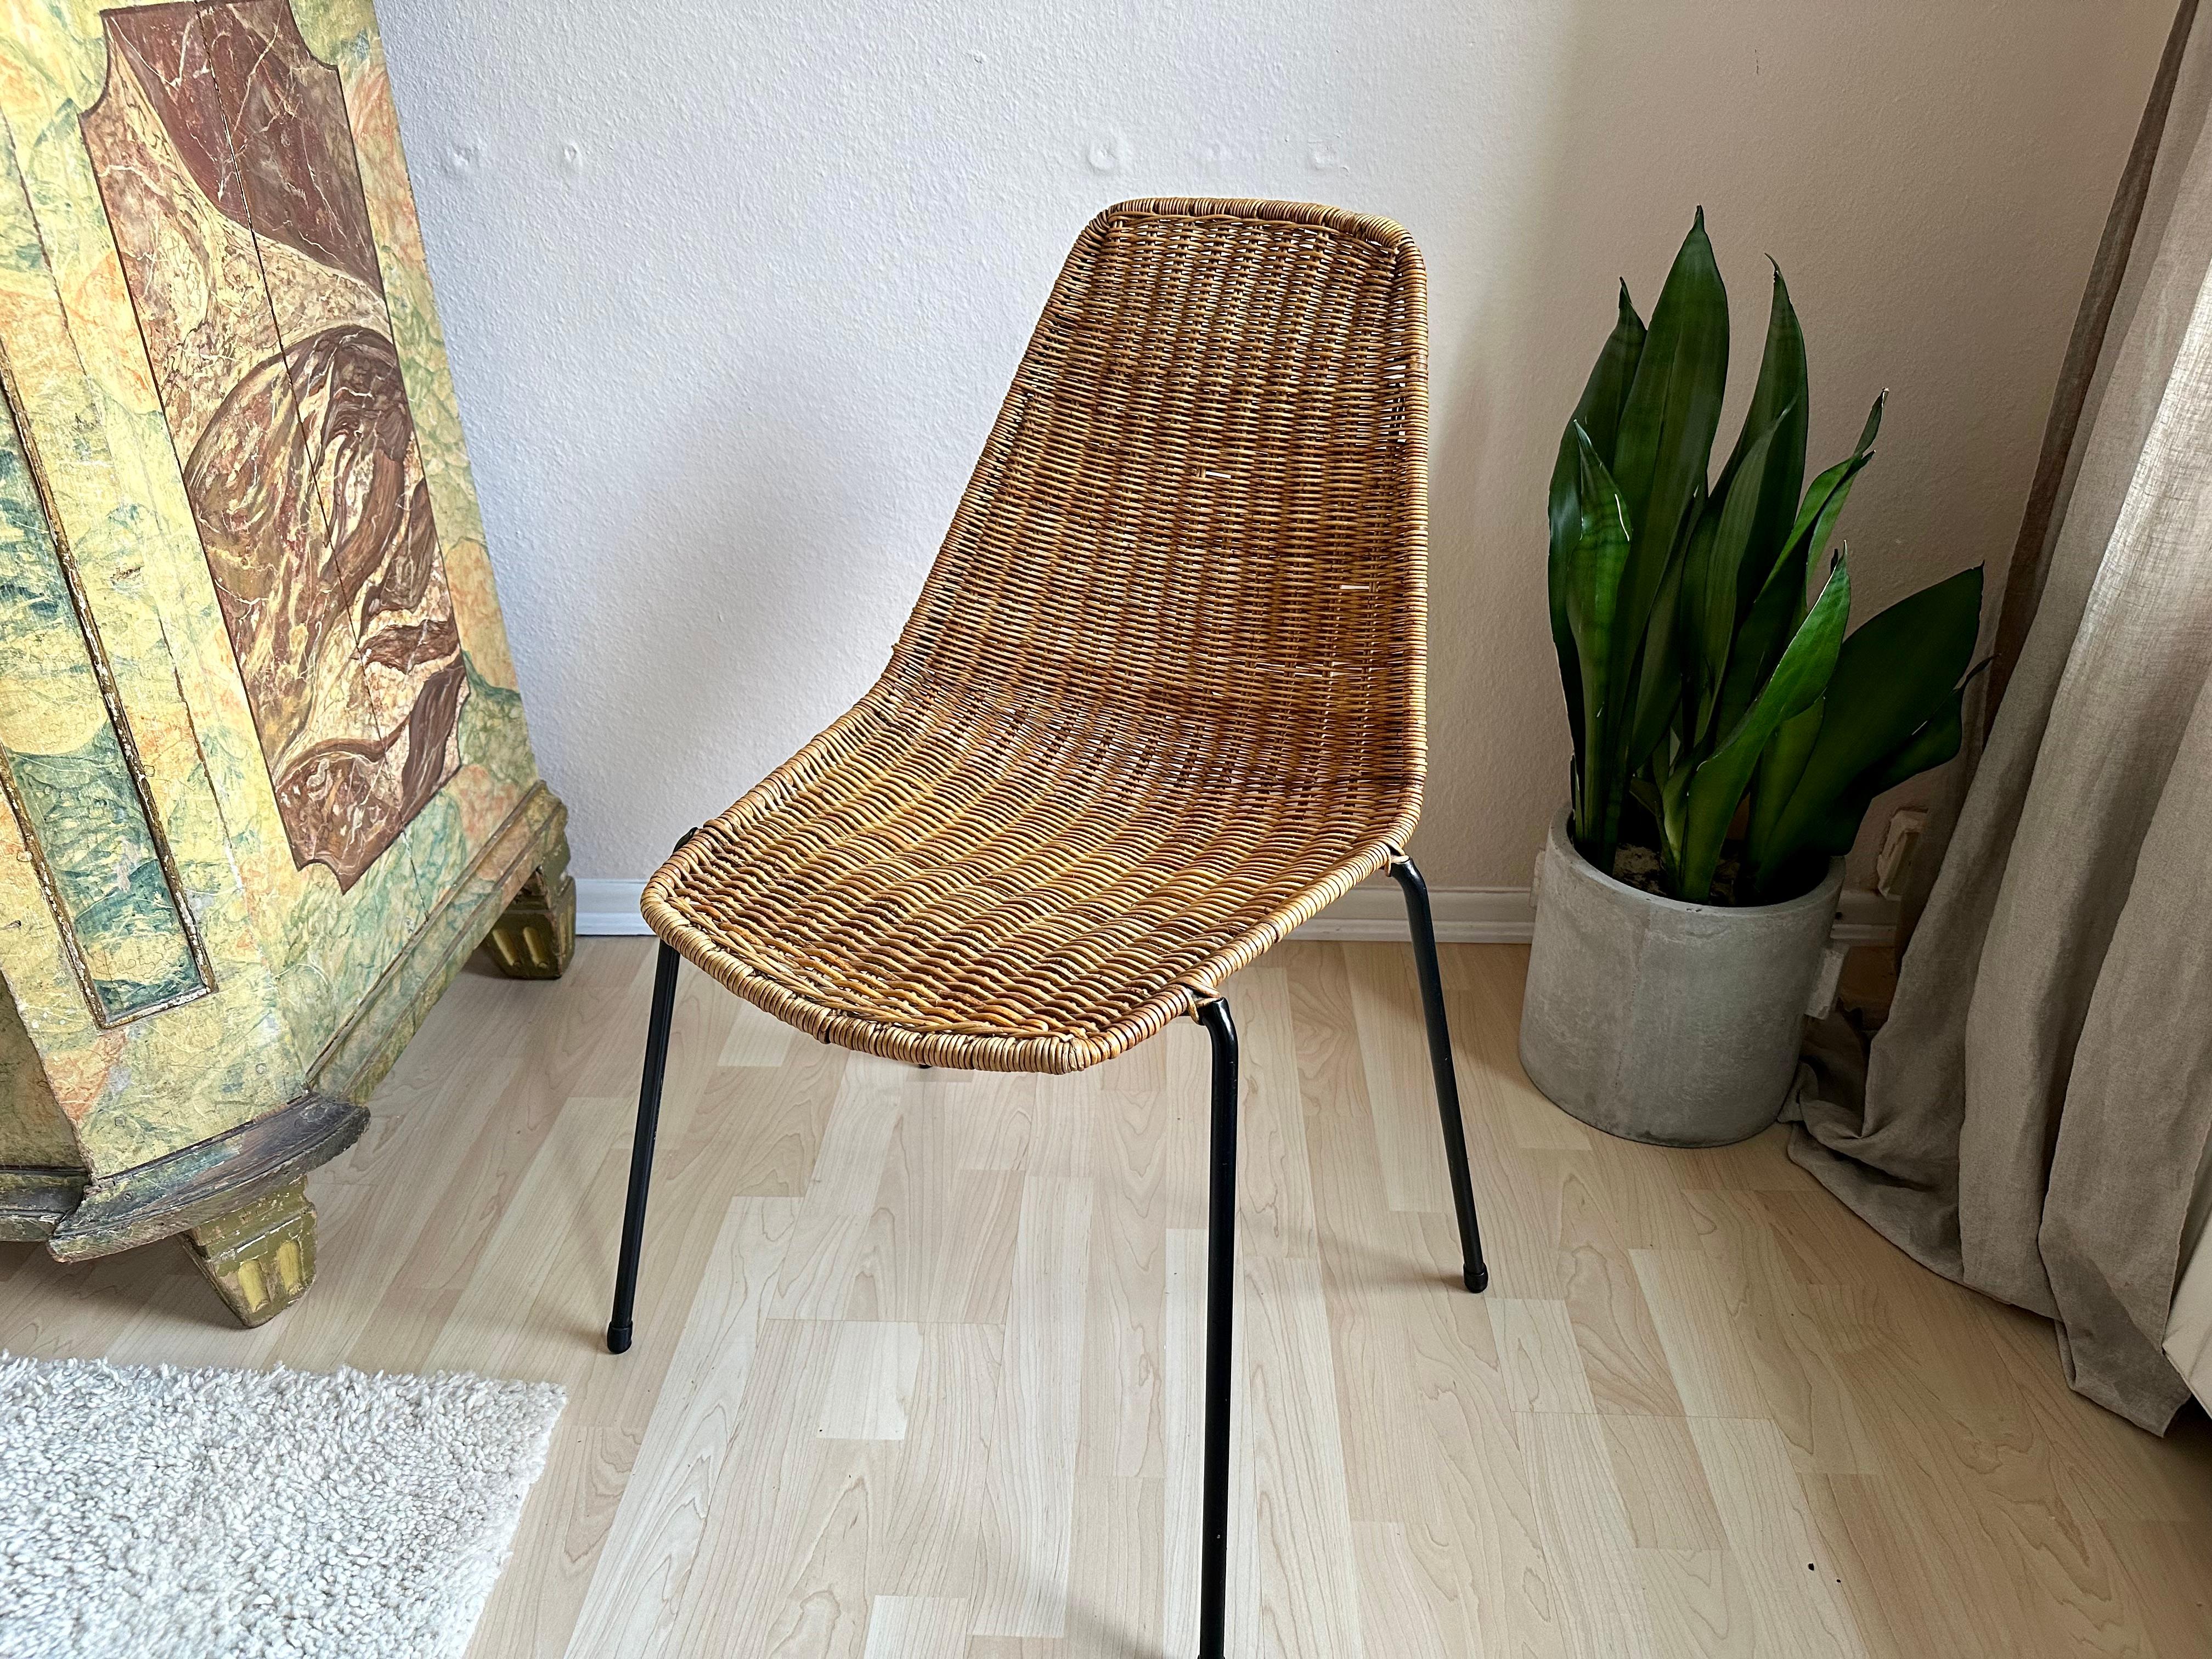 Der Basket Chair des Designers Gian Franco Legler ist ein Meisterwerk, das aus exquisitem Rattan gefertigt ist. Gian Franco Legler, bekannt für seine innovativen Entwürfe, verbindet in diesem einzigartigen Stück nahtlos Komfort und Stil. Mit seinem